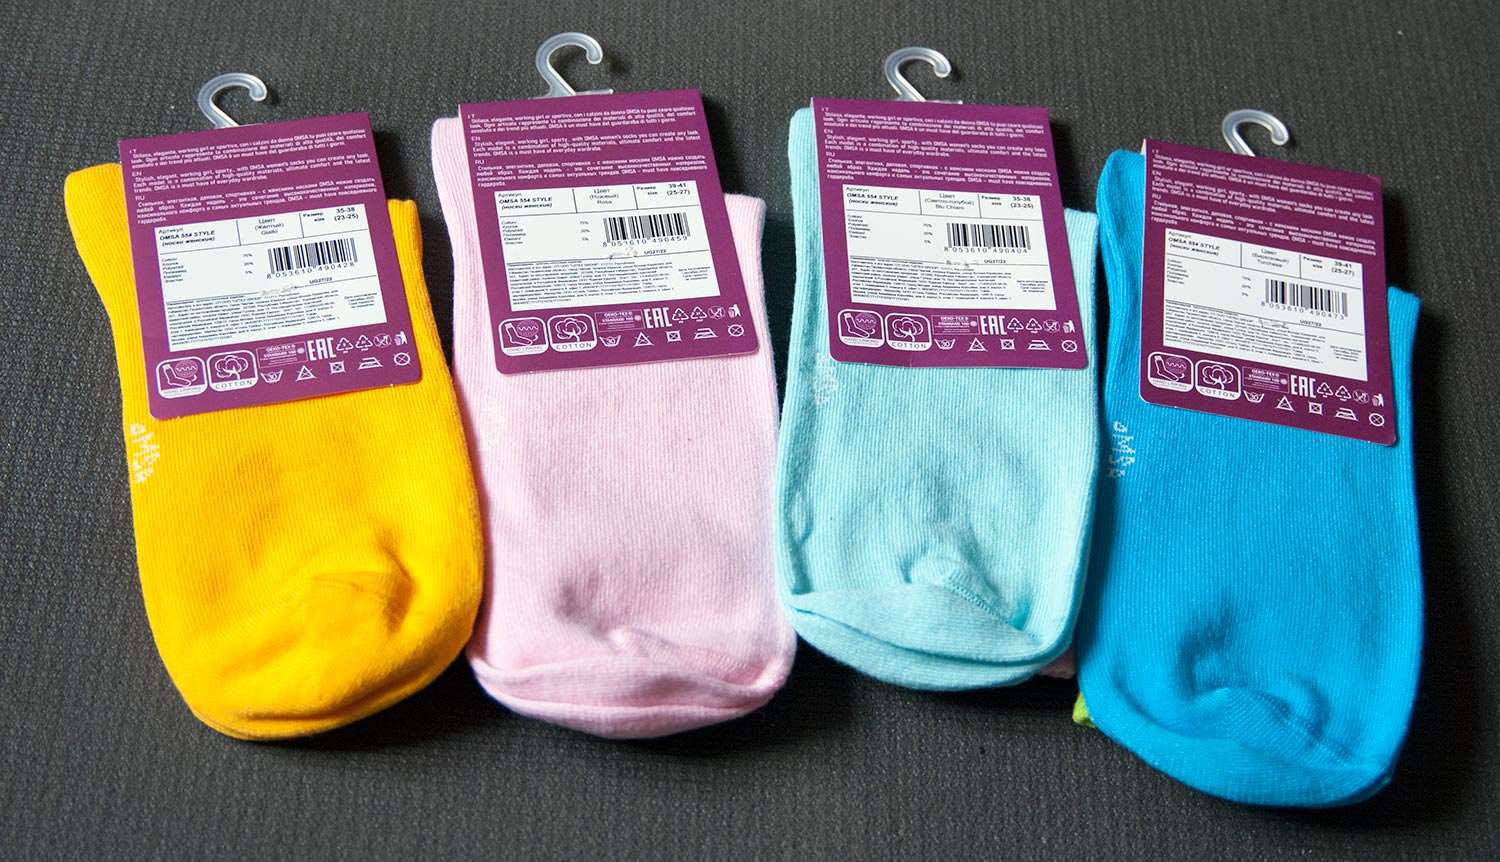 Двухцветные женские хлопковые носки Omsa 554 Style. ©bracatuS.com